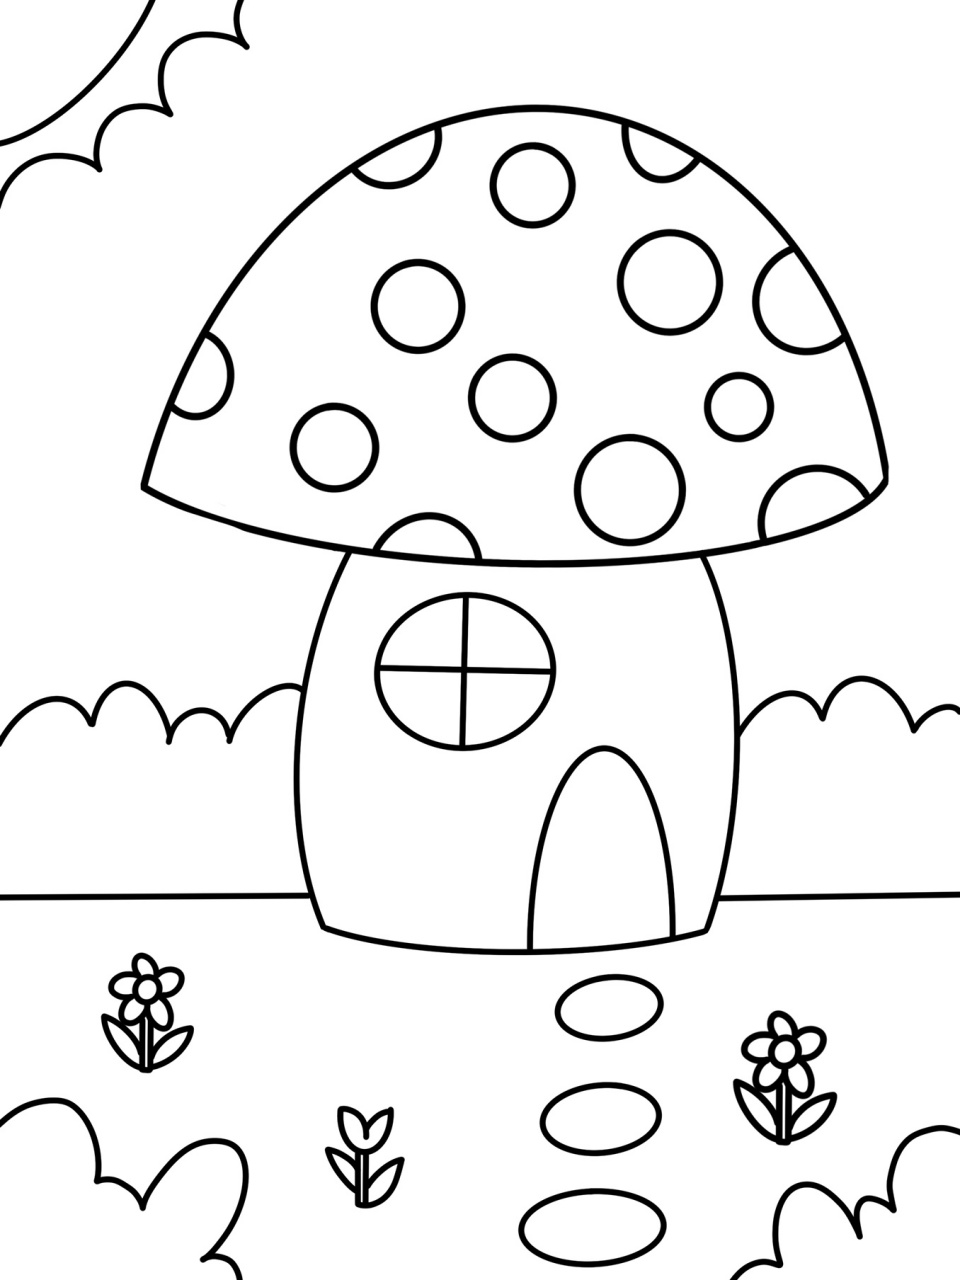 蘑菇创意画简笔画图片